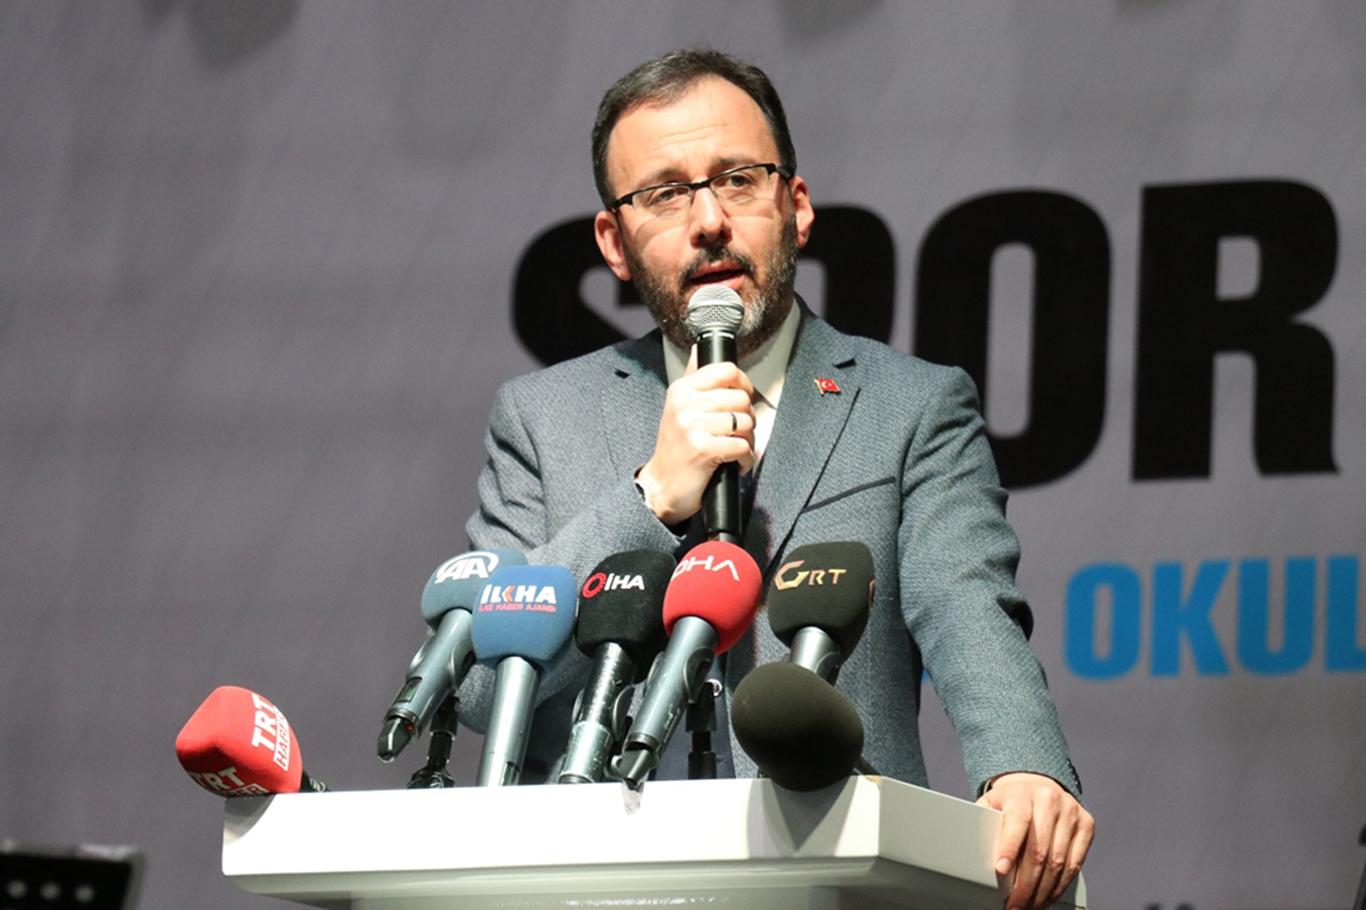 "Gaziantep'e 127 milyon TL'lik spor yatırımı yapacağız"